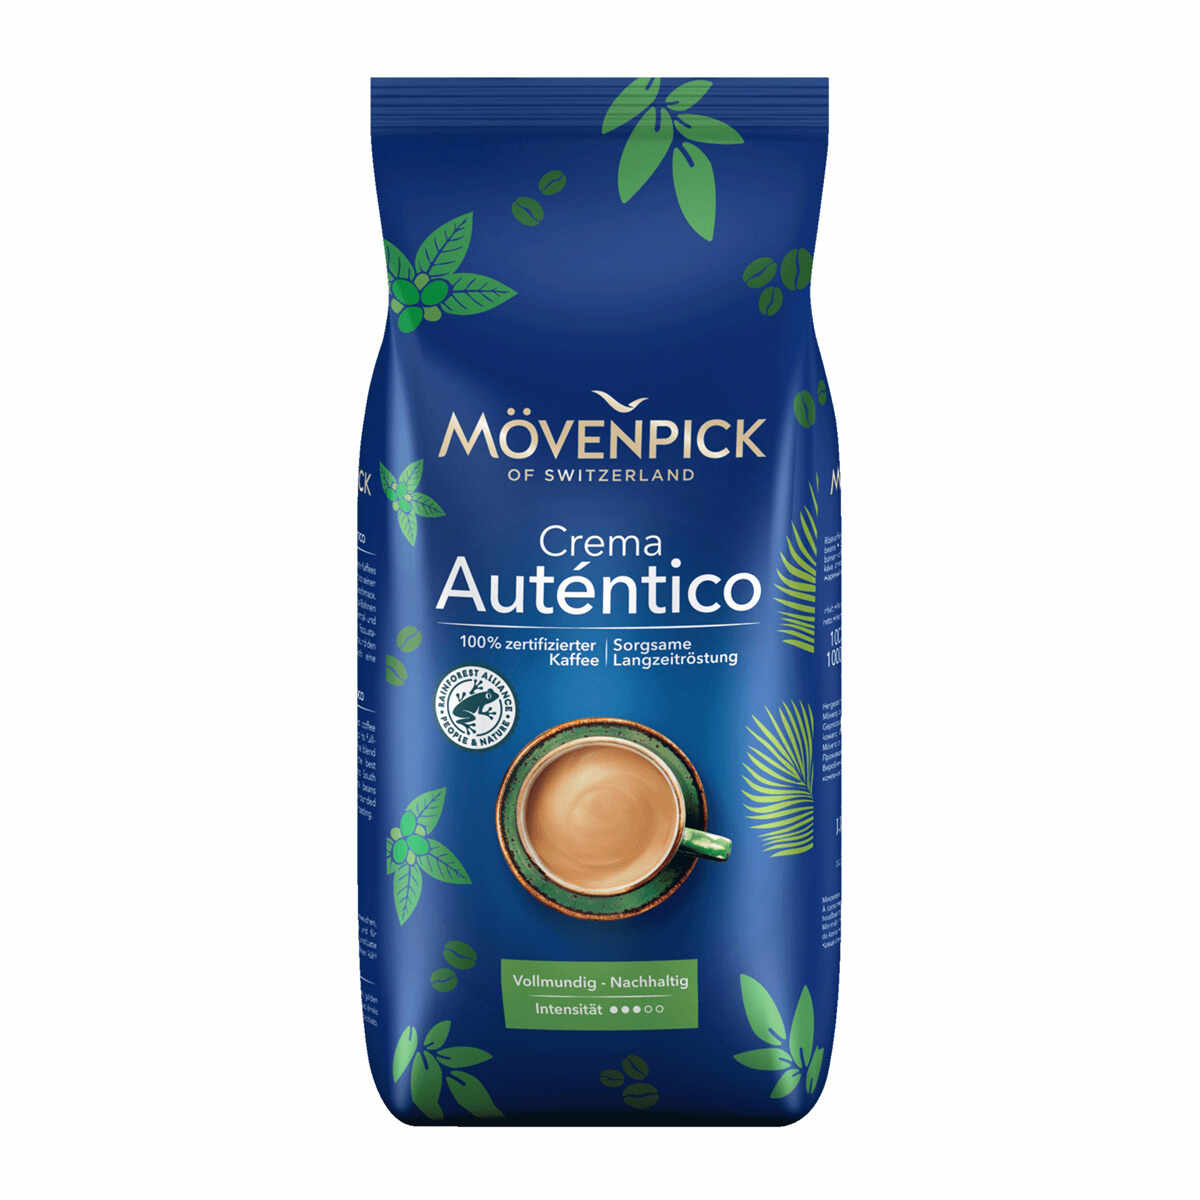 Movenpick Crema Autentico cafea boabe 1 kg